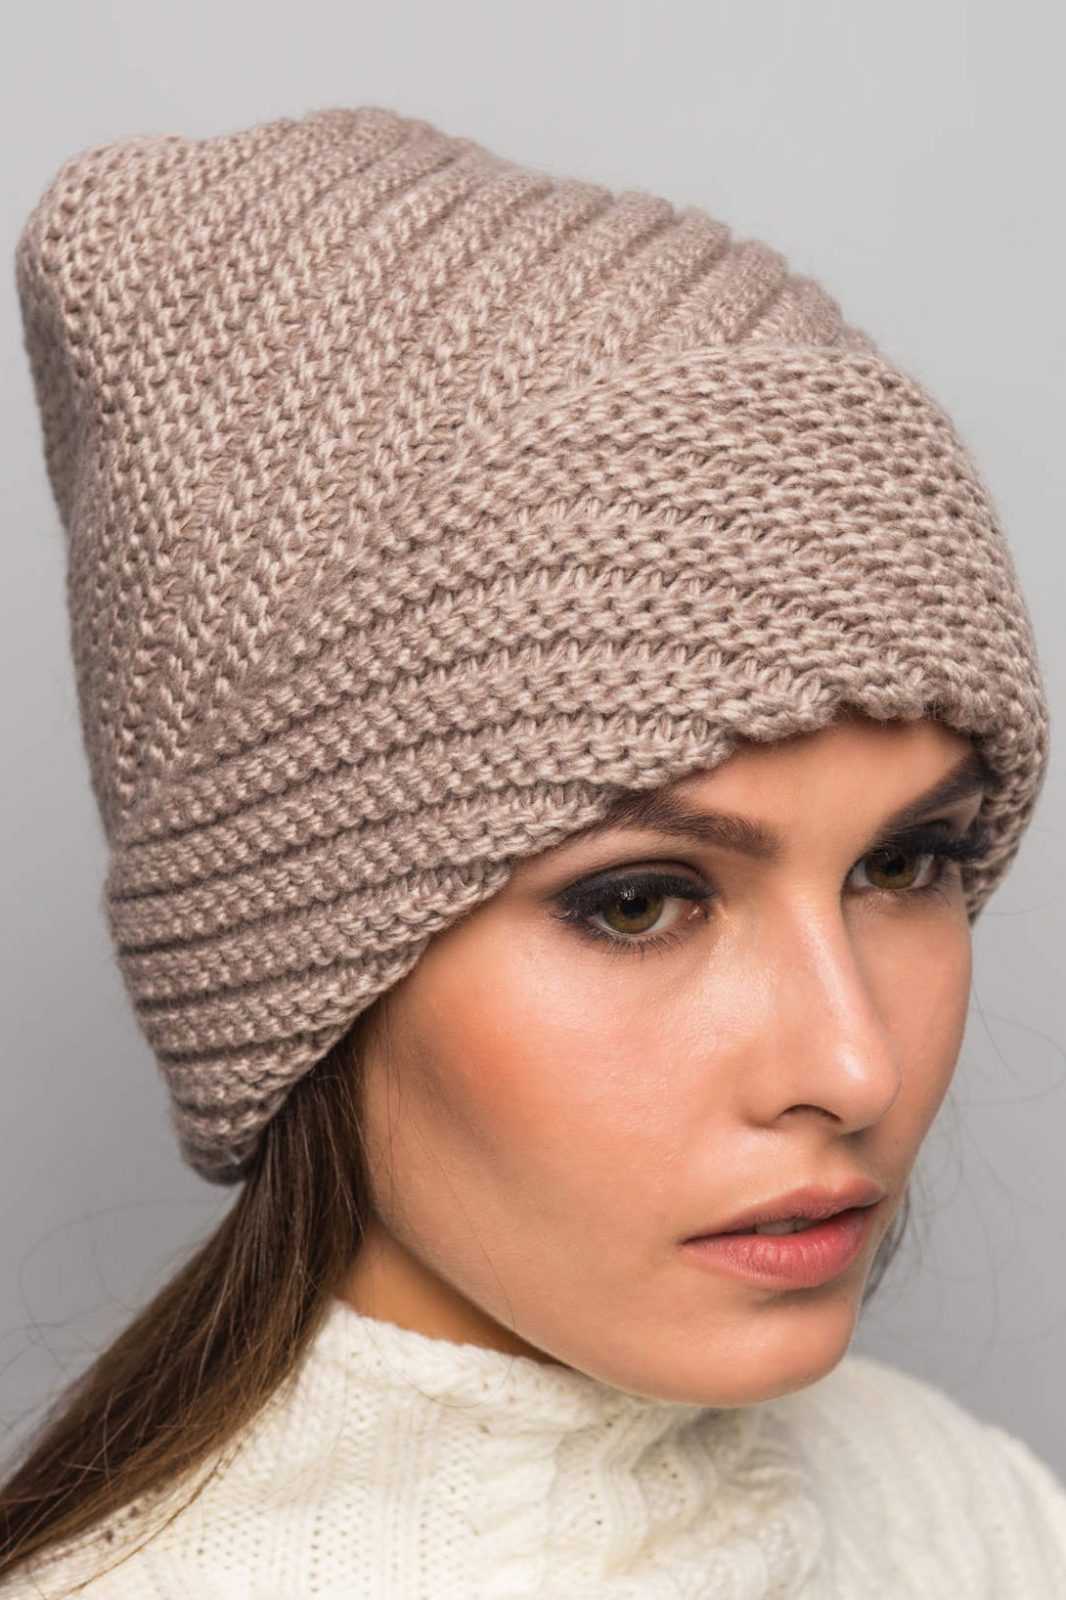 Объемная шапка с одним отворотом цвета крем-брюле | Шапка, Вязаные шапки, Вязание